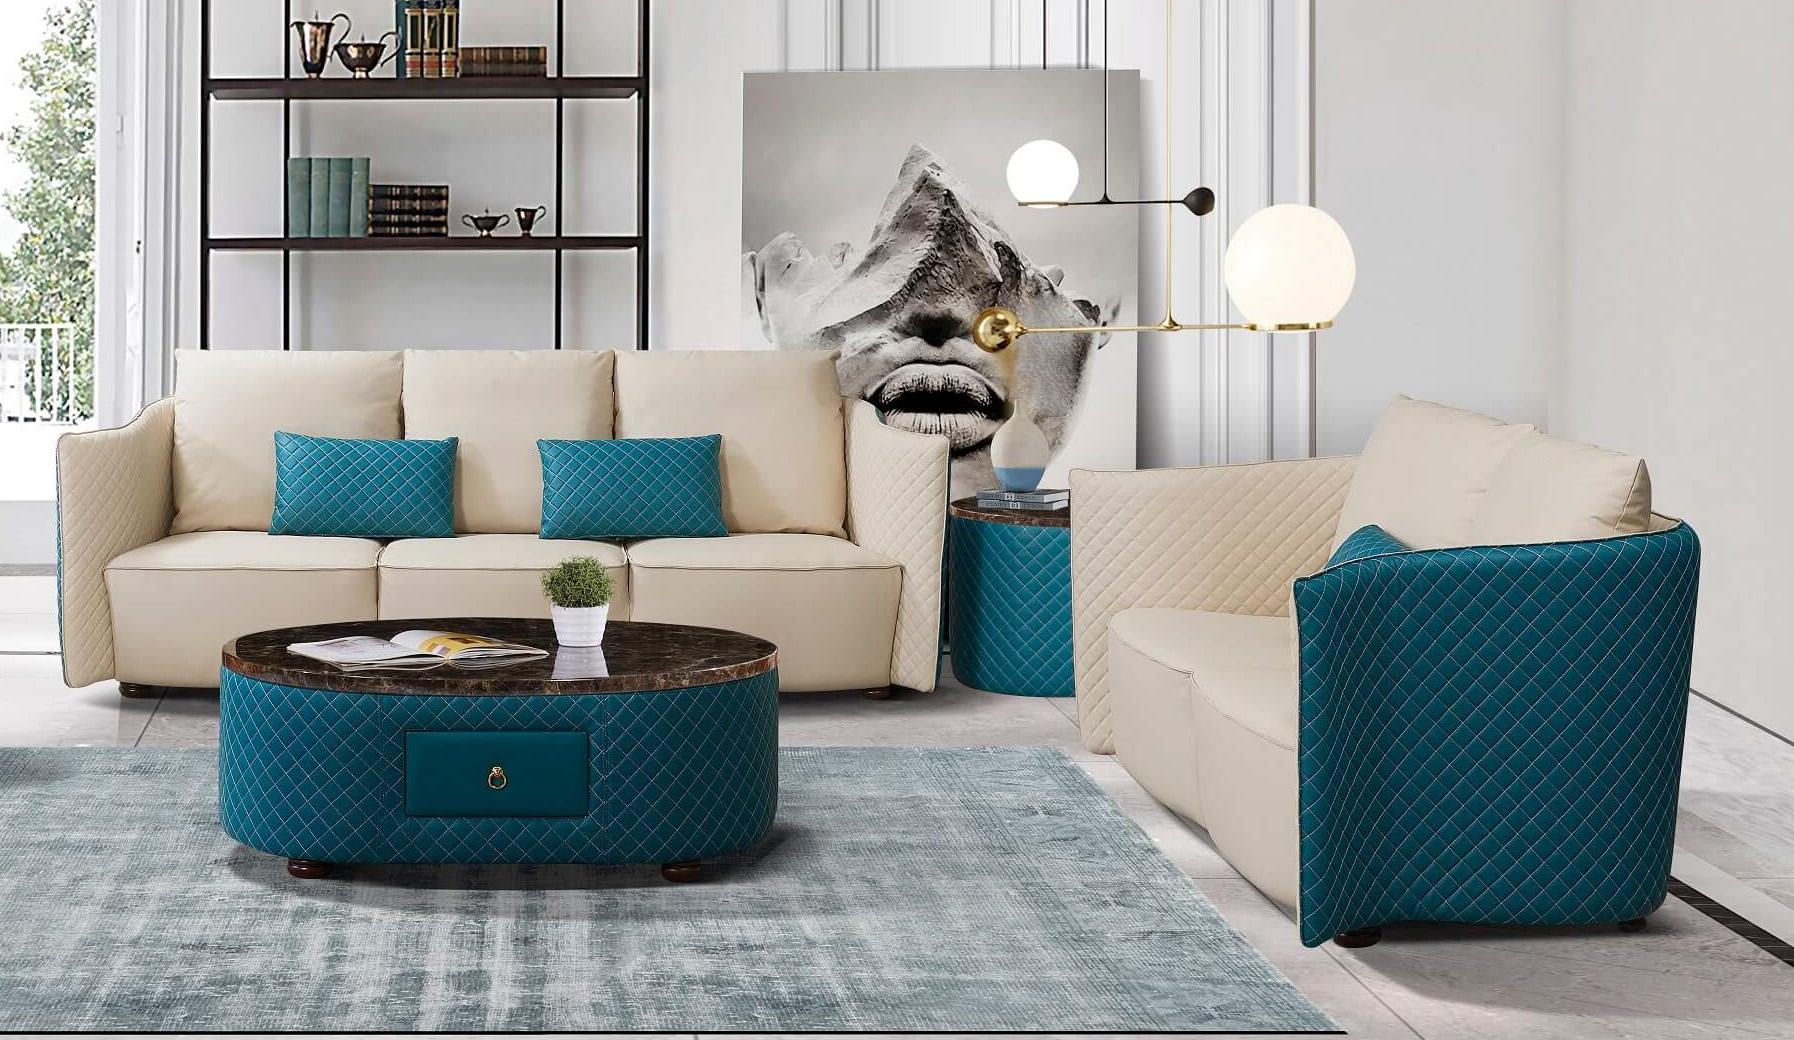 

    
Luxury Italian Leather Beige & Blue MAKASSAR Sofa Set 2Pcs EUROPEAN FURNITURE
